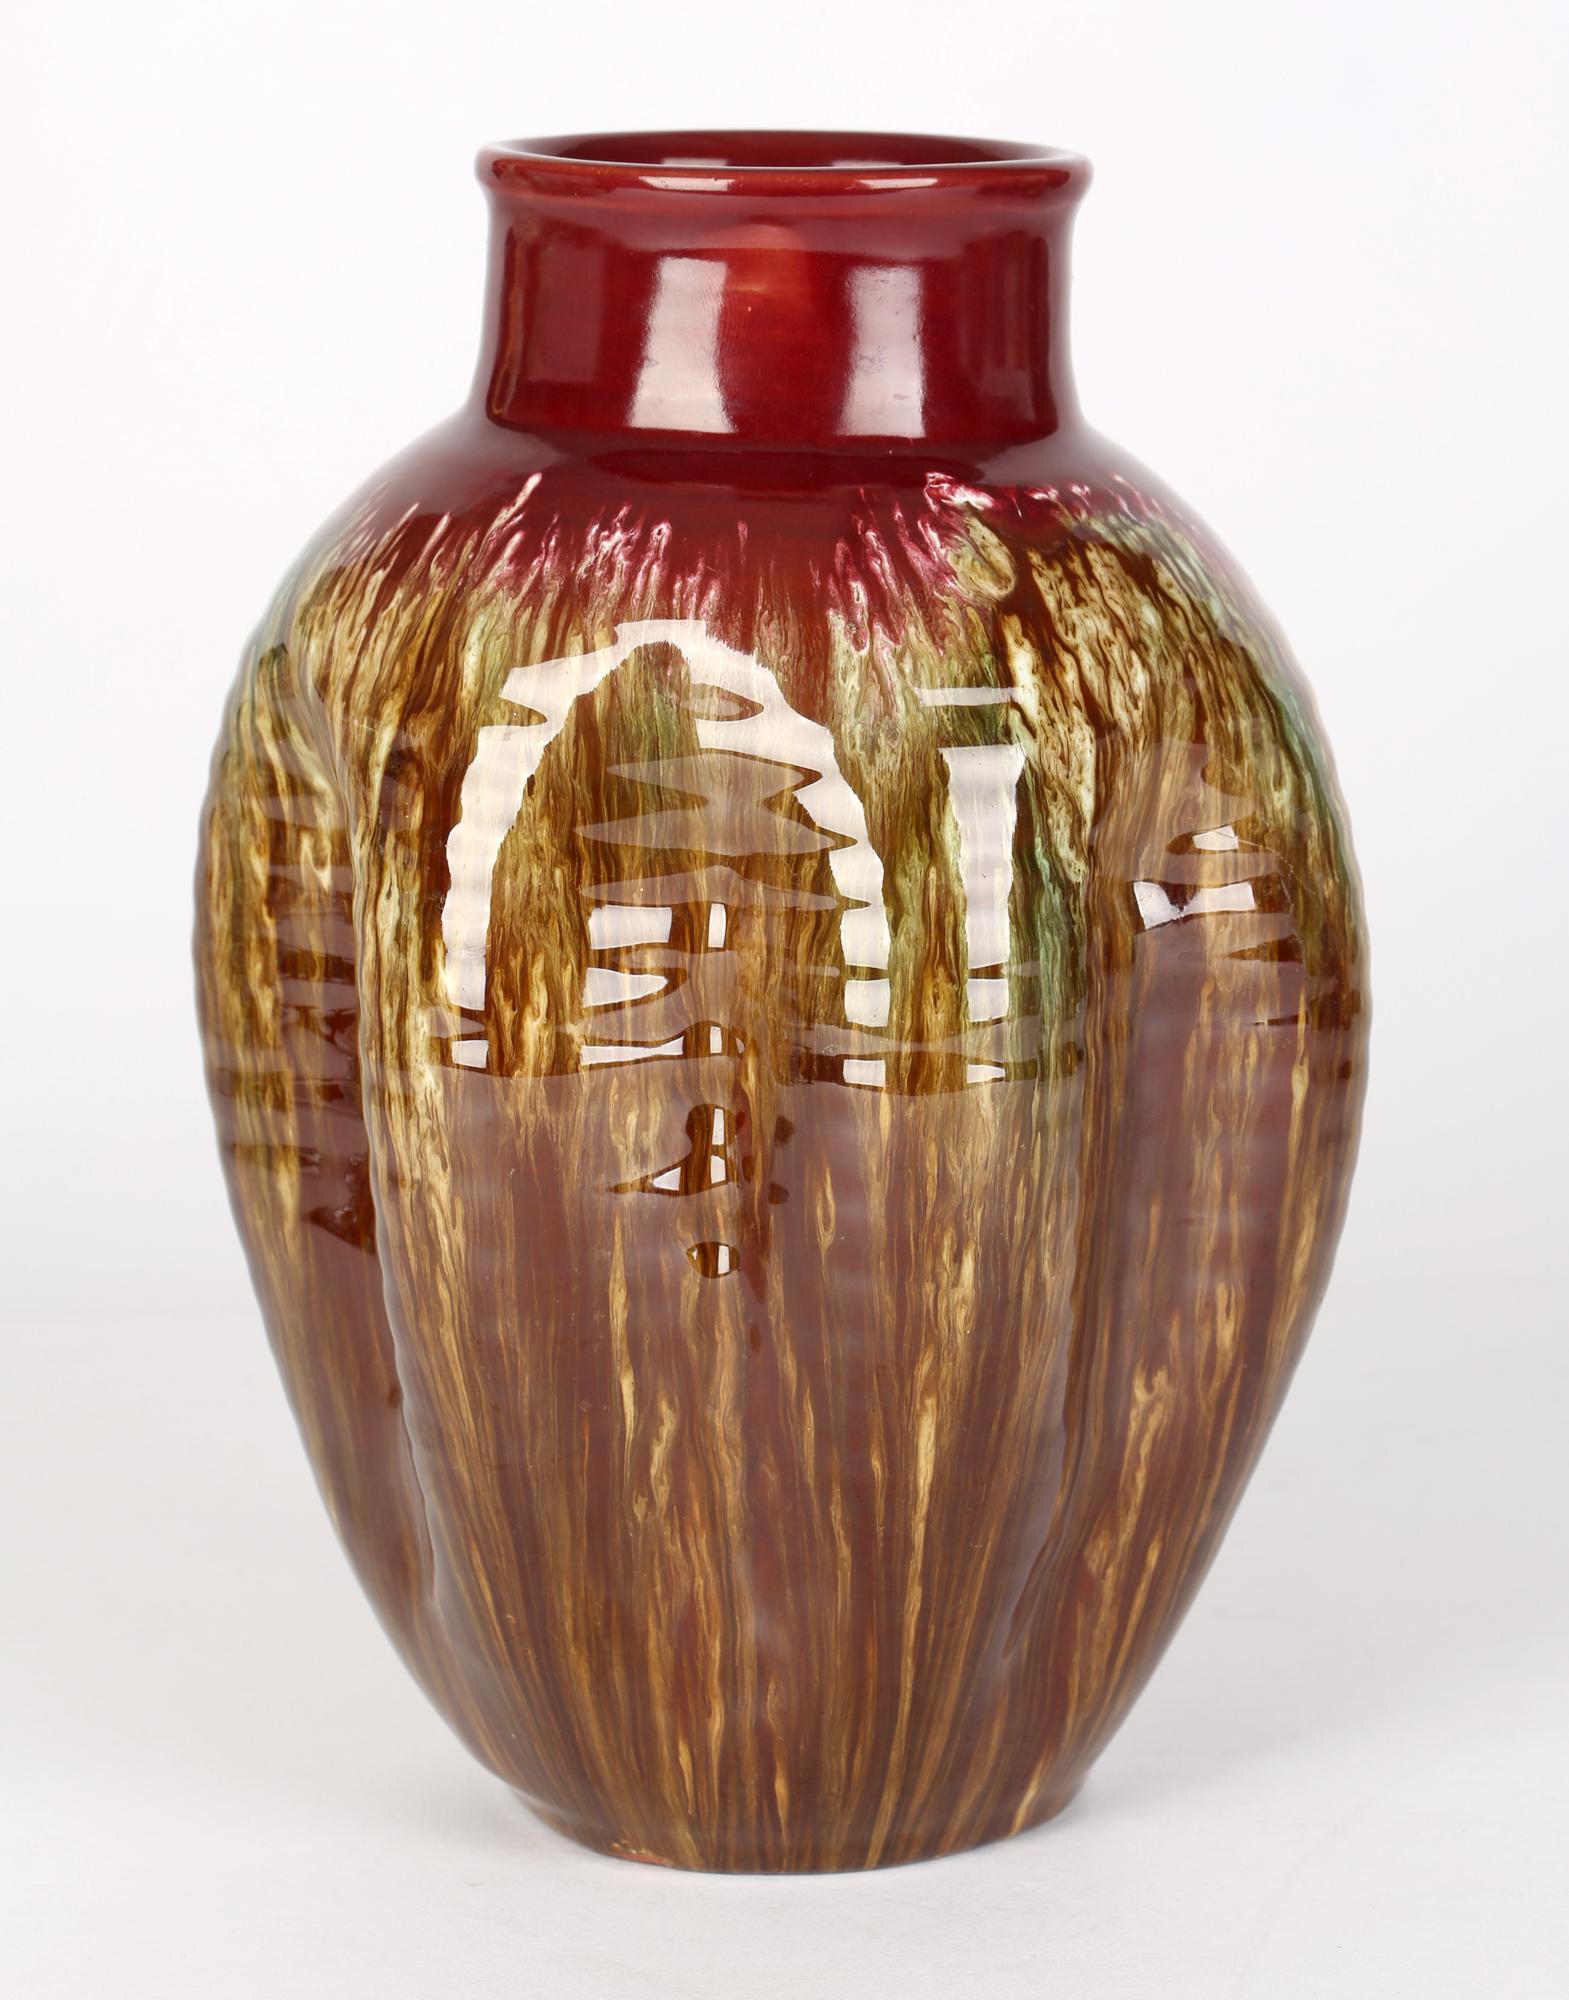 Christopher Dresser Linthorpe Pinched Streak Glazed Art Pottery Vase For Sale 3